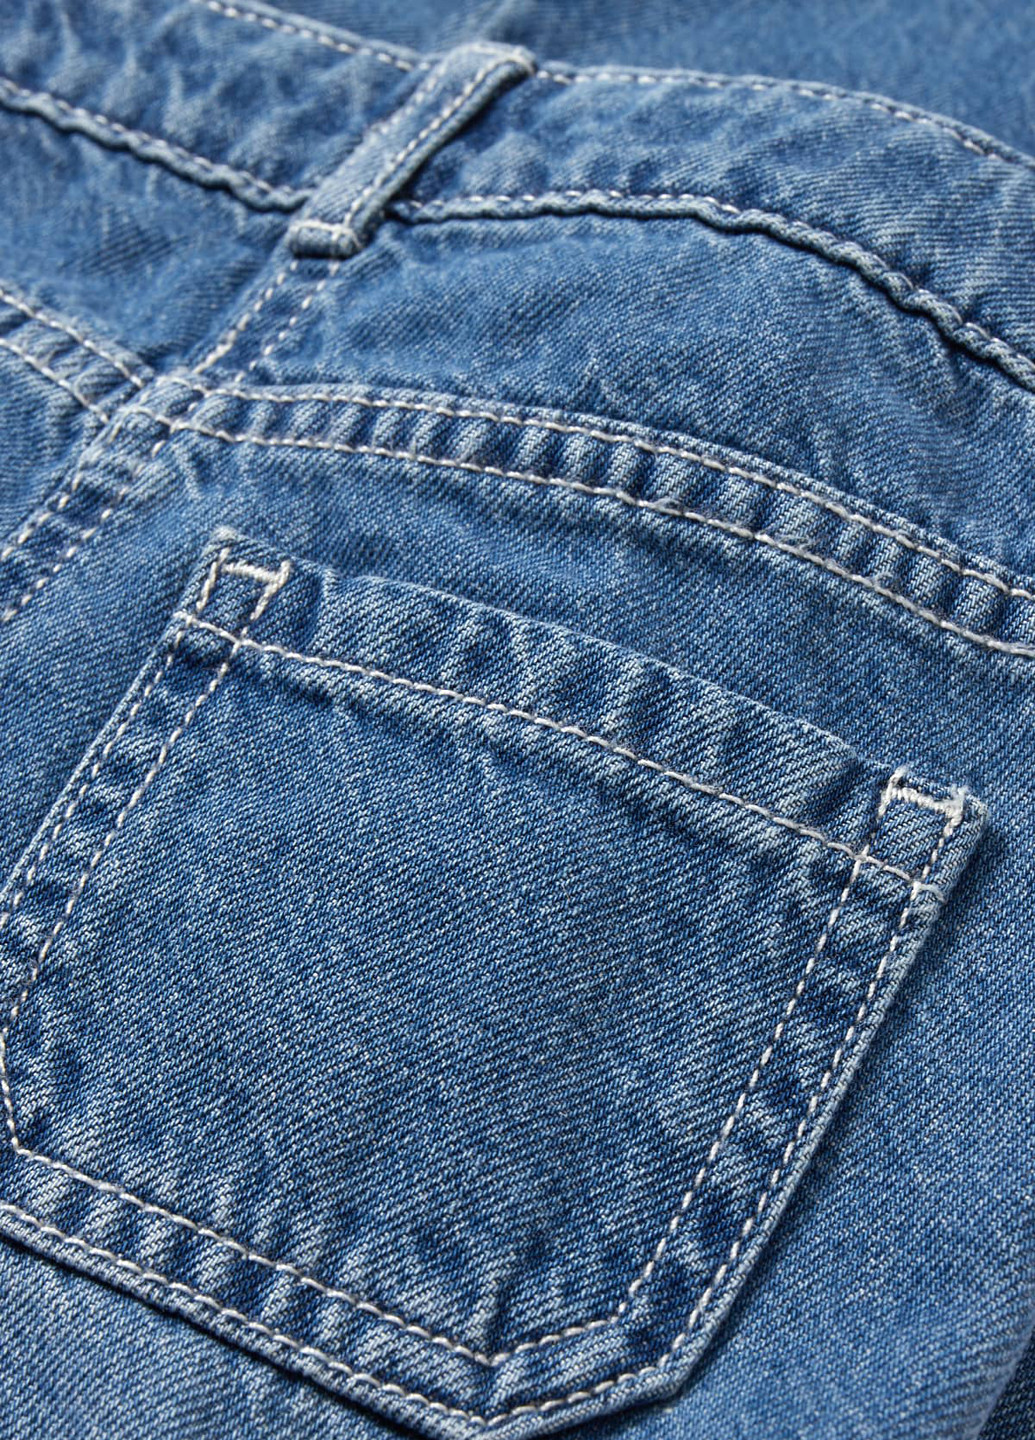 Голубые демисезонные карго, мешковатые джинсы C&A